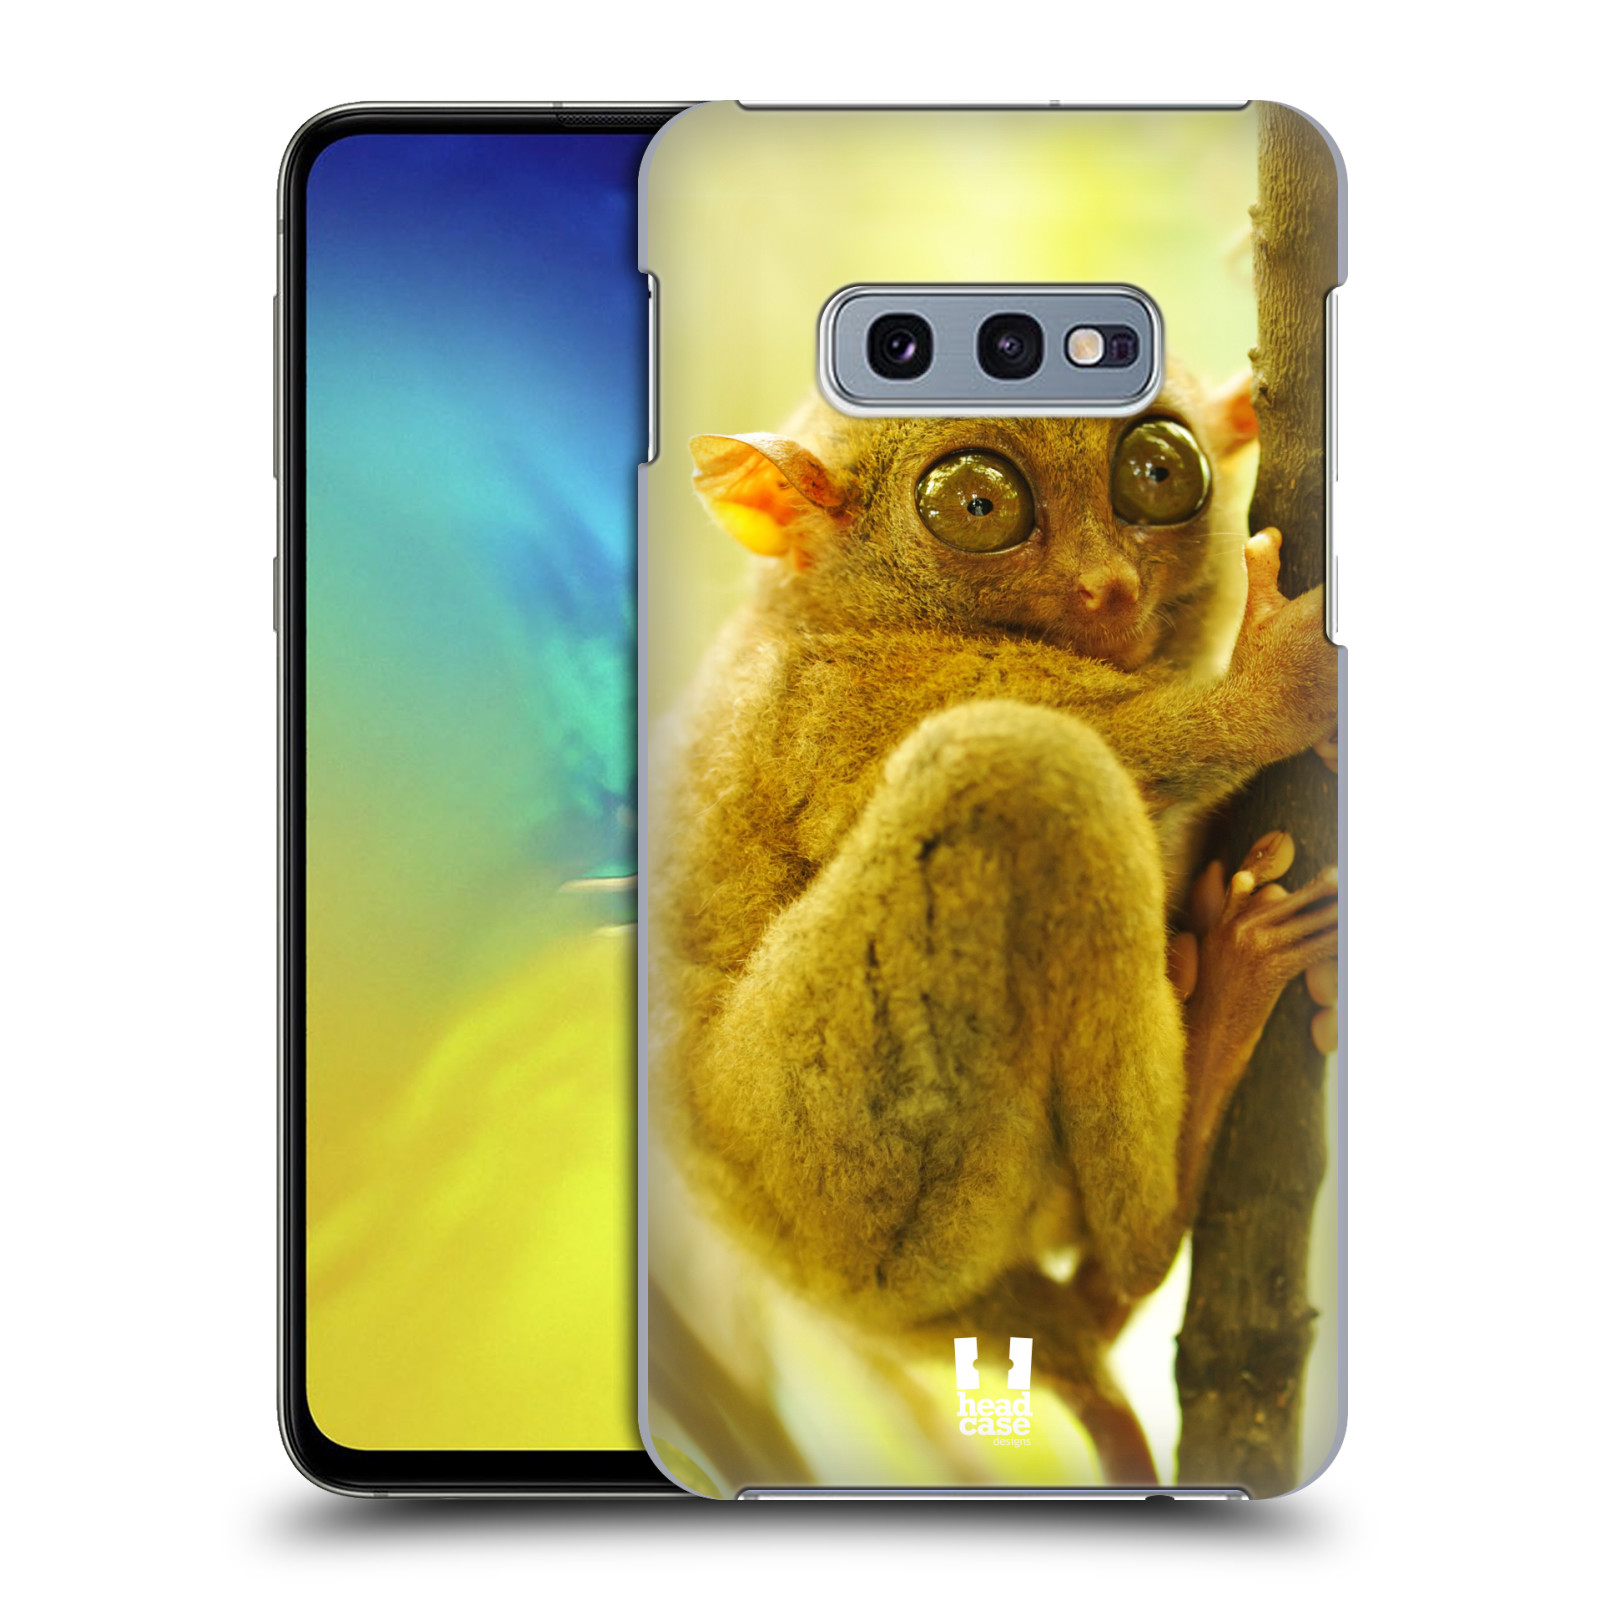 Pouzdro na mobil Samsung Galaxy S10e - HEAD CASE - vzor slavná zvířata foto Nártoun